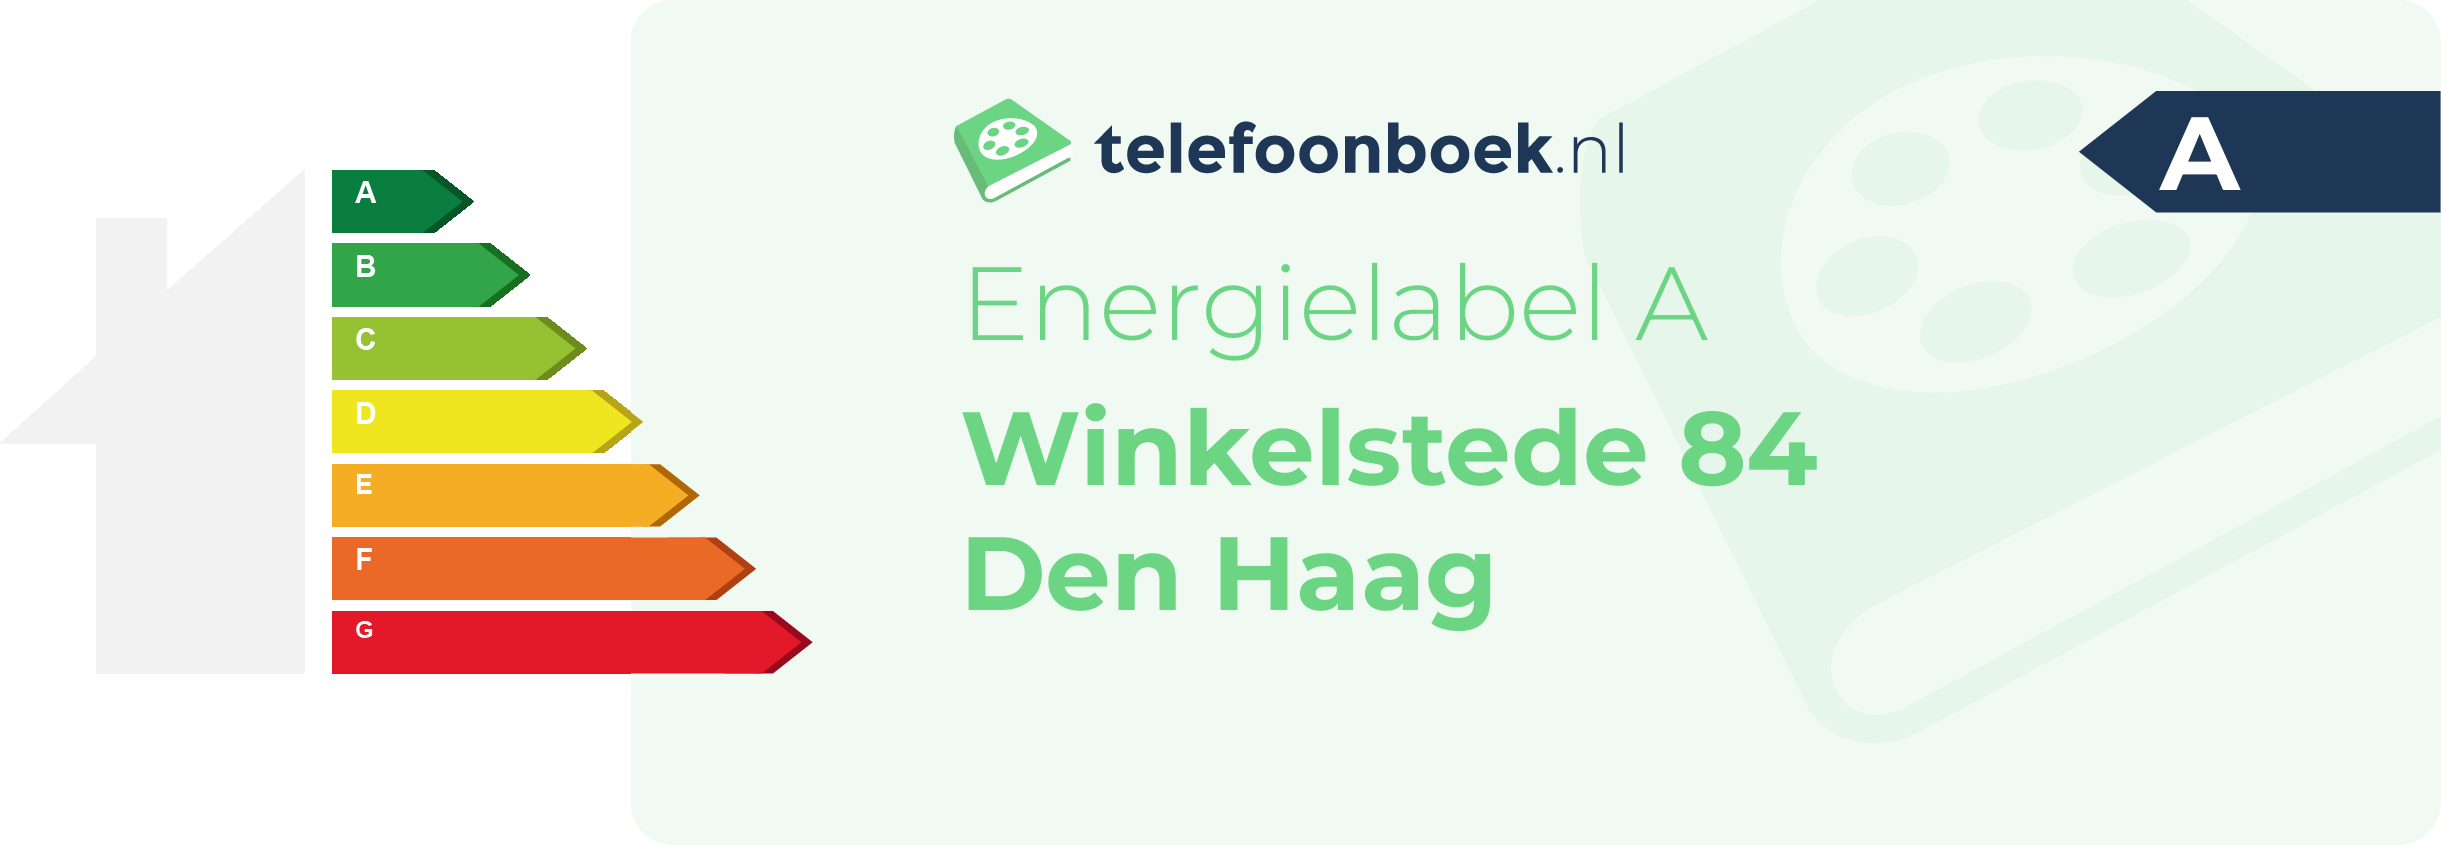 Energielabel Winkelstede 84 Den Haag